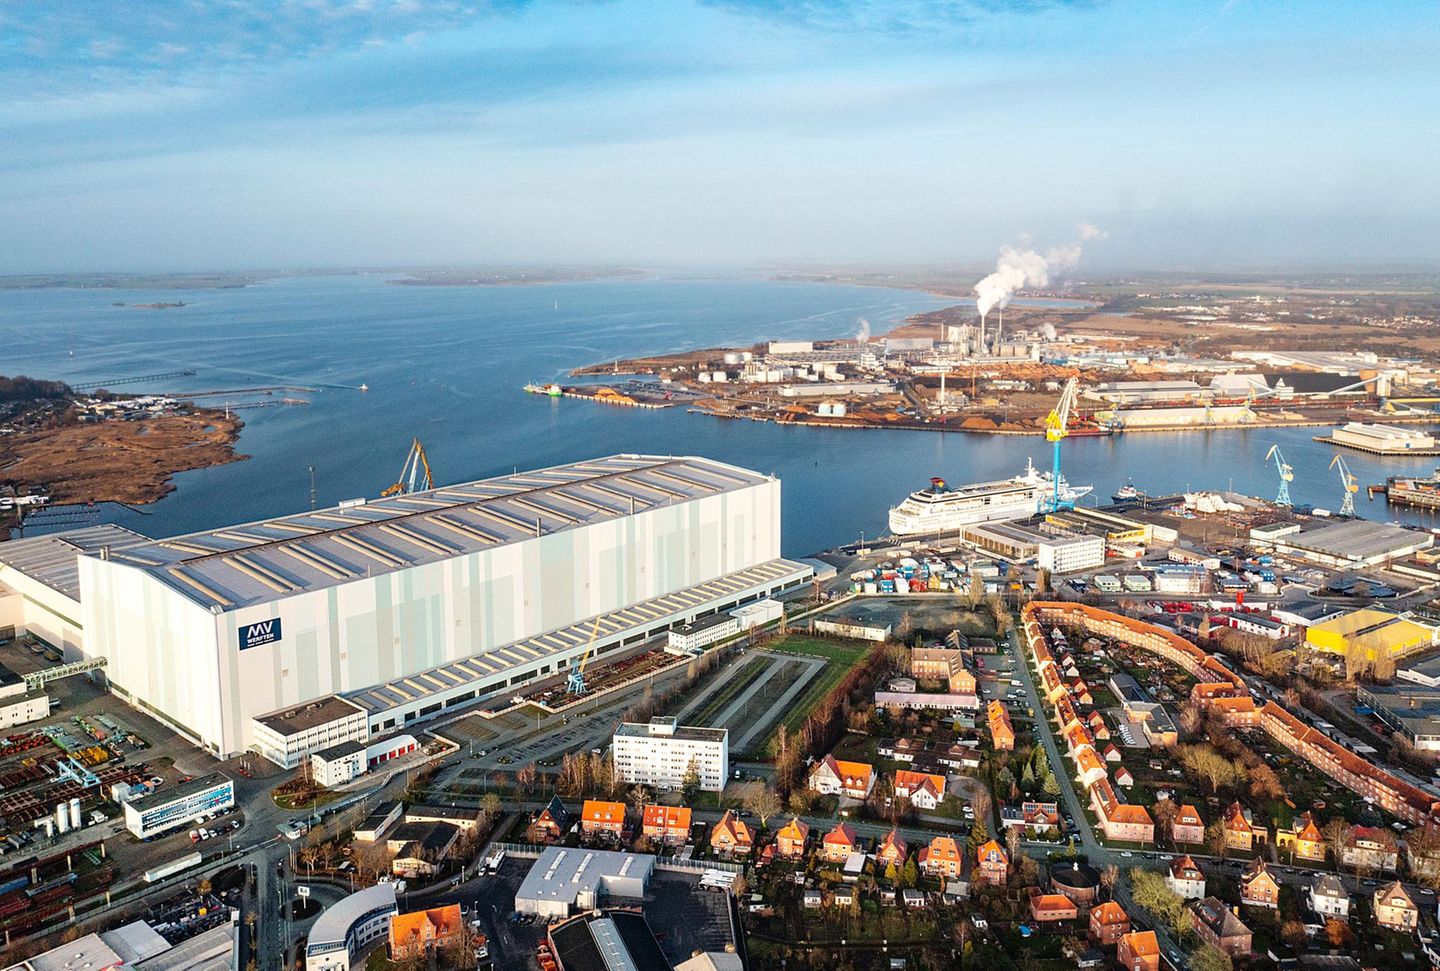 Letzte Hoffnung Bundesmarine: Die Wismarer MV Werften haben bisher Kreuzfahrtschiffe gebaut